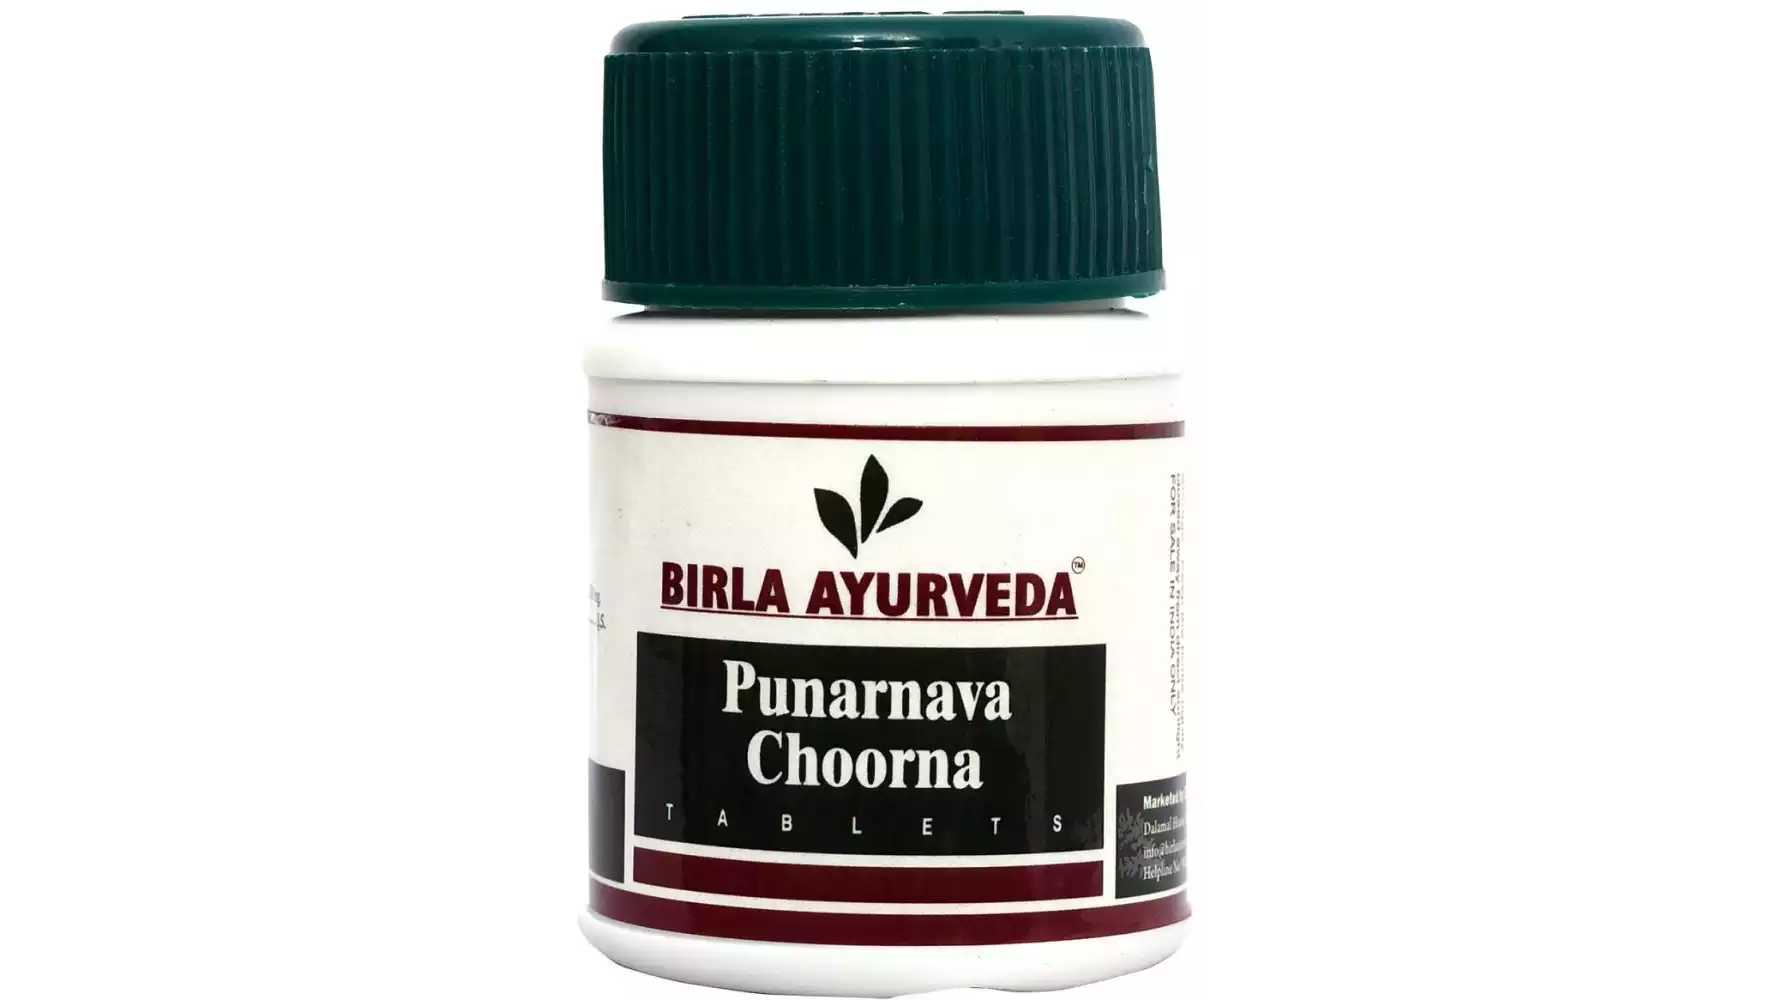 Birla Ayurveda Punarva Choorna Tablets (60tab)